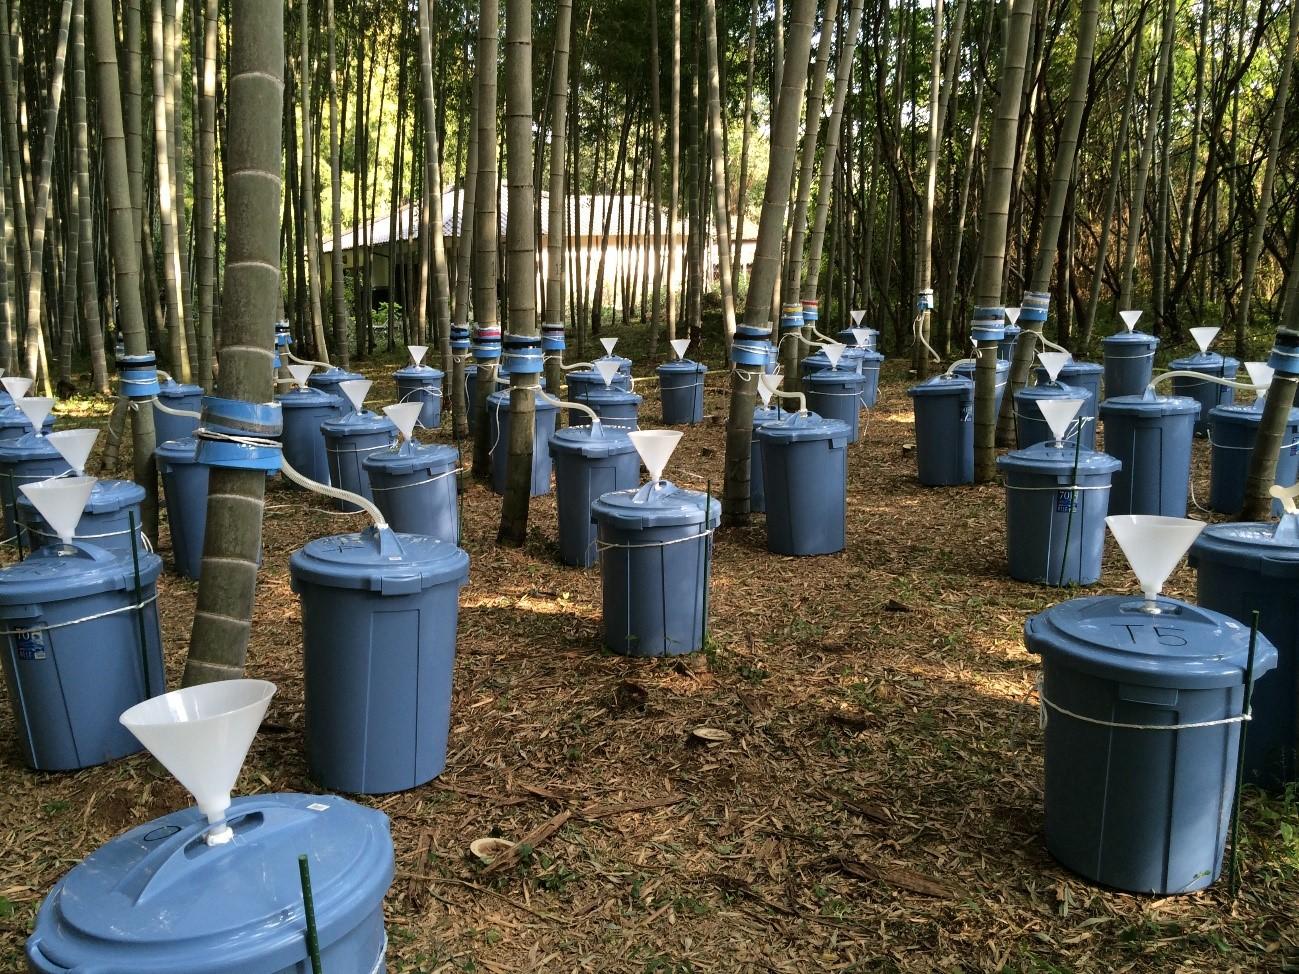 竹林の管理が水資源に及ぼす影響のモニタリング